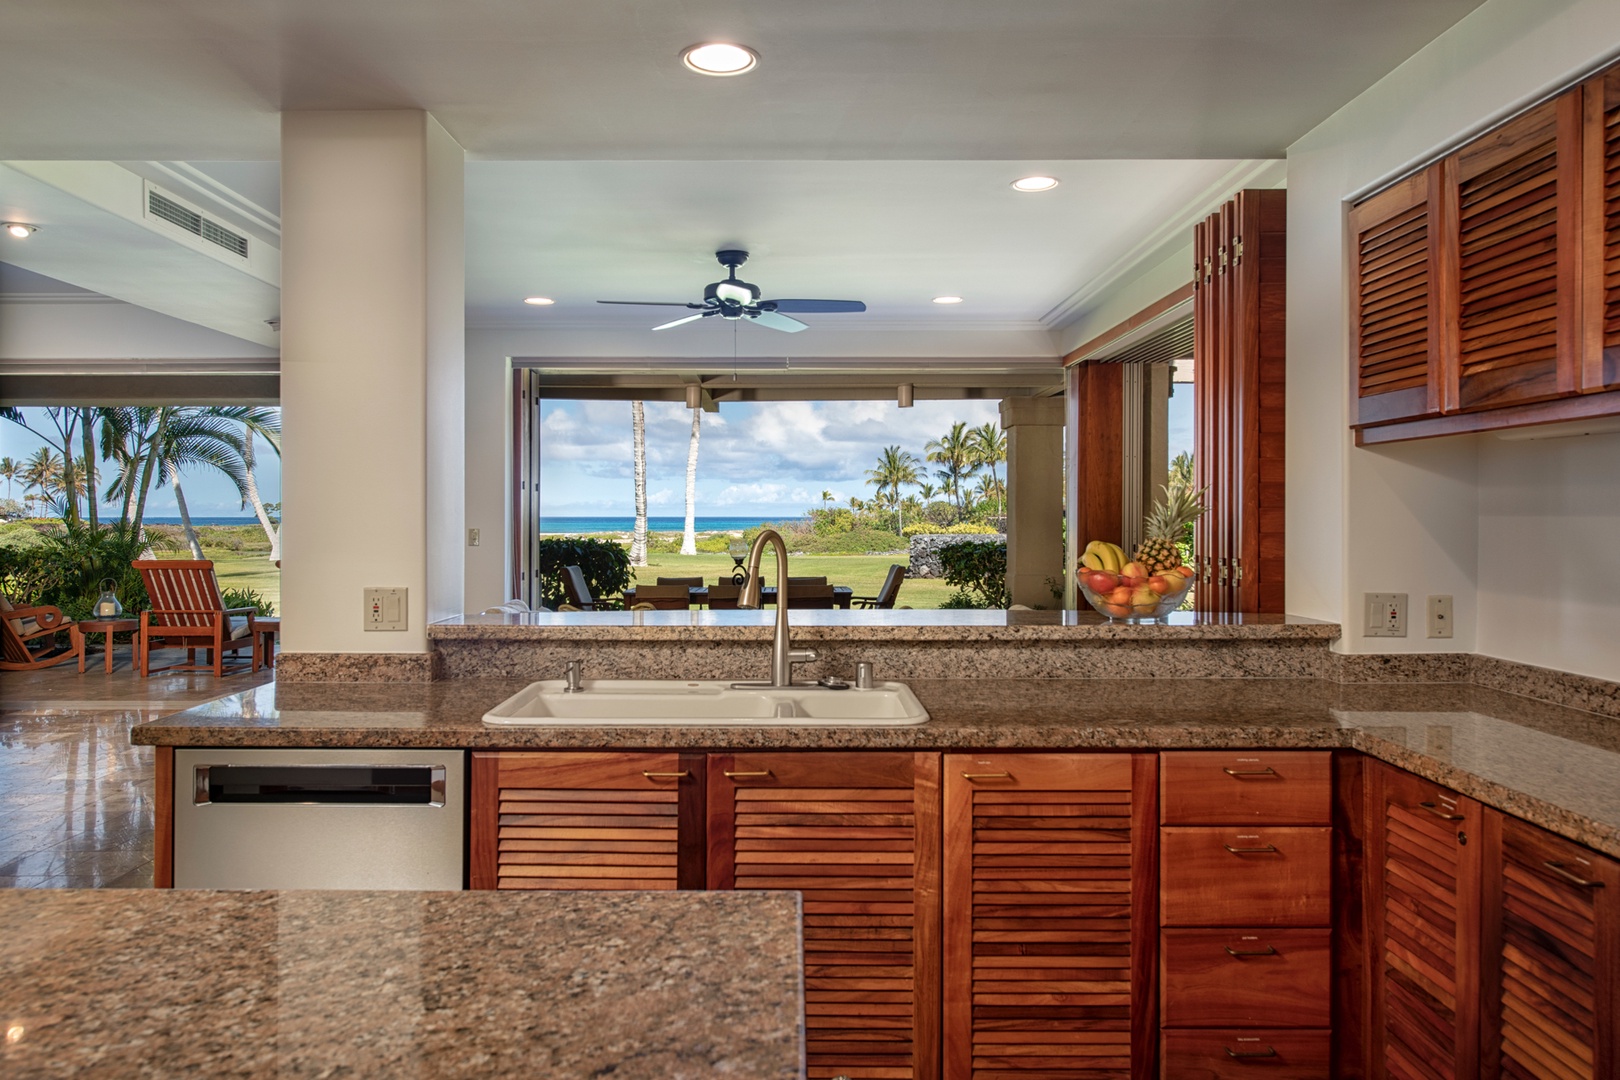 Kailua Kona Vacation Rentals, 3BD Golf Villa (3101) at Four Seasons Resort at Hualalai - Alternate view of kitchen highlighting ocean view.